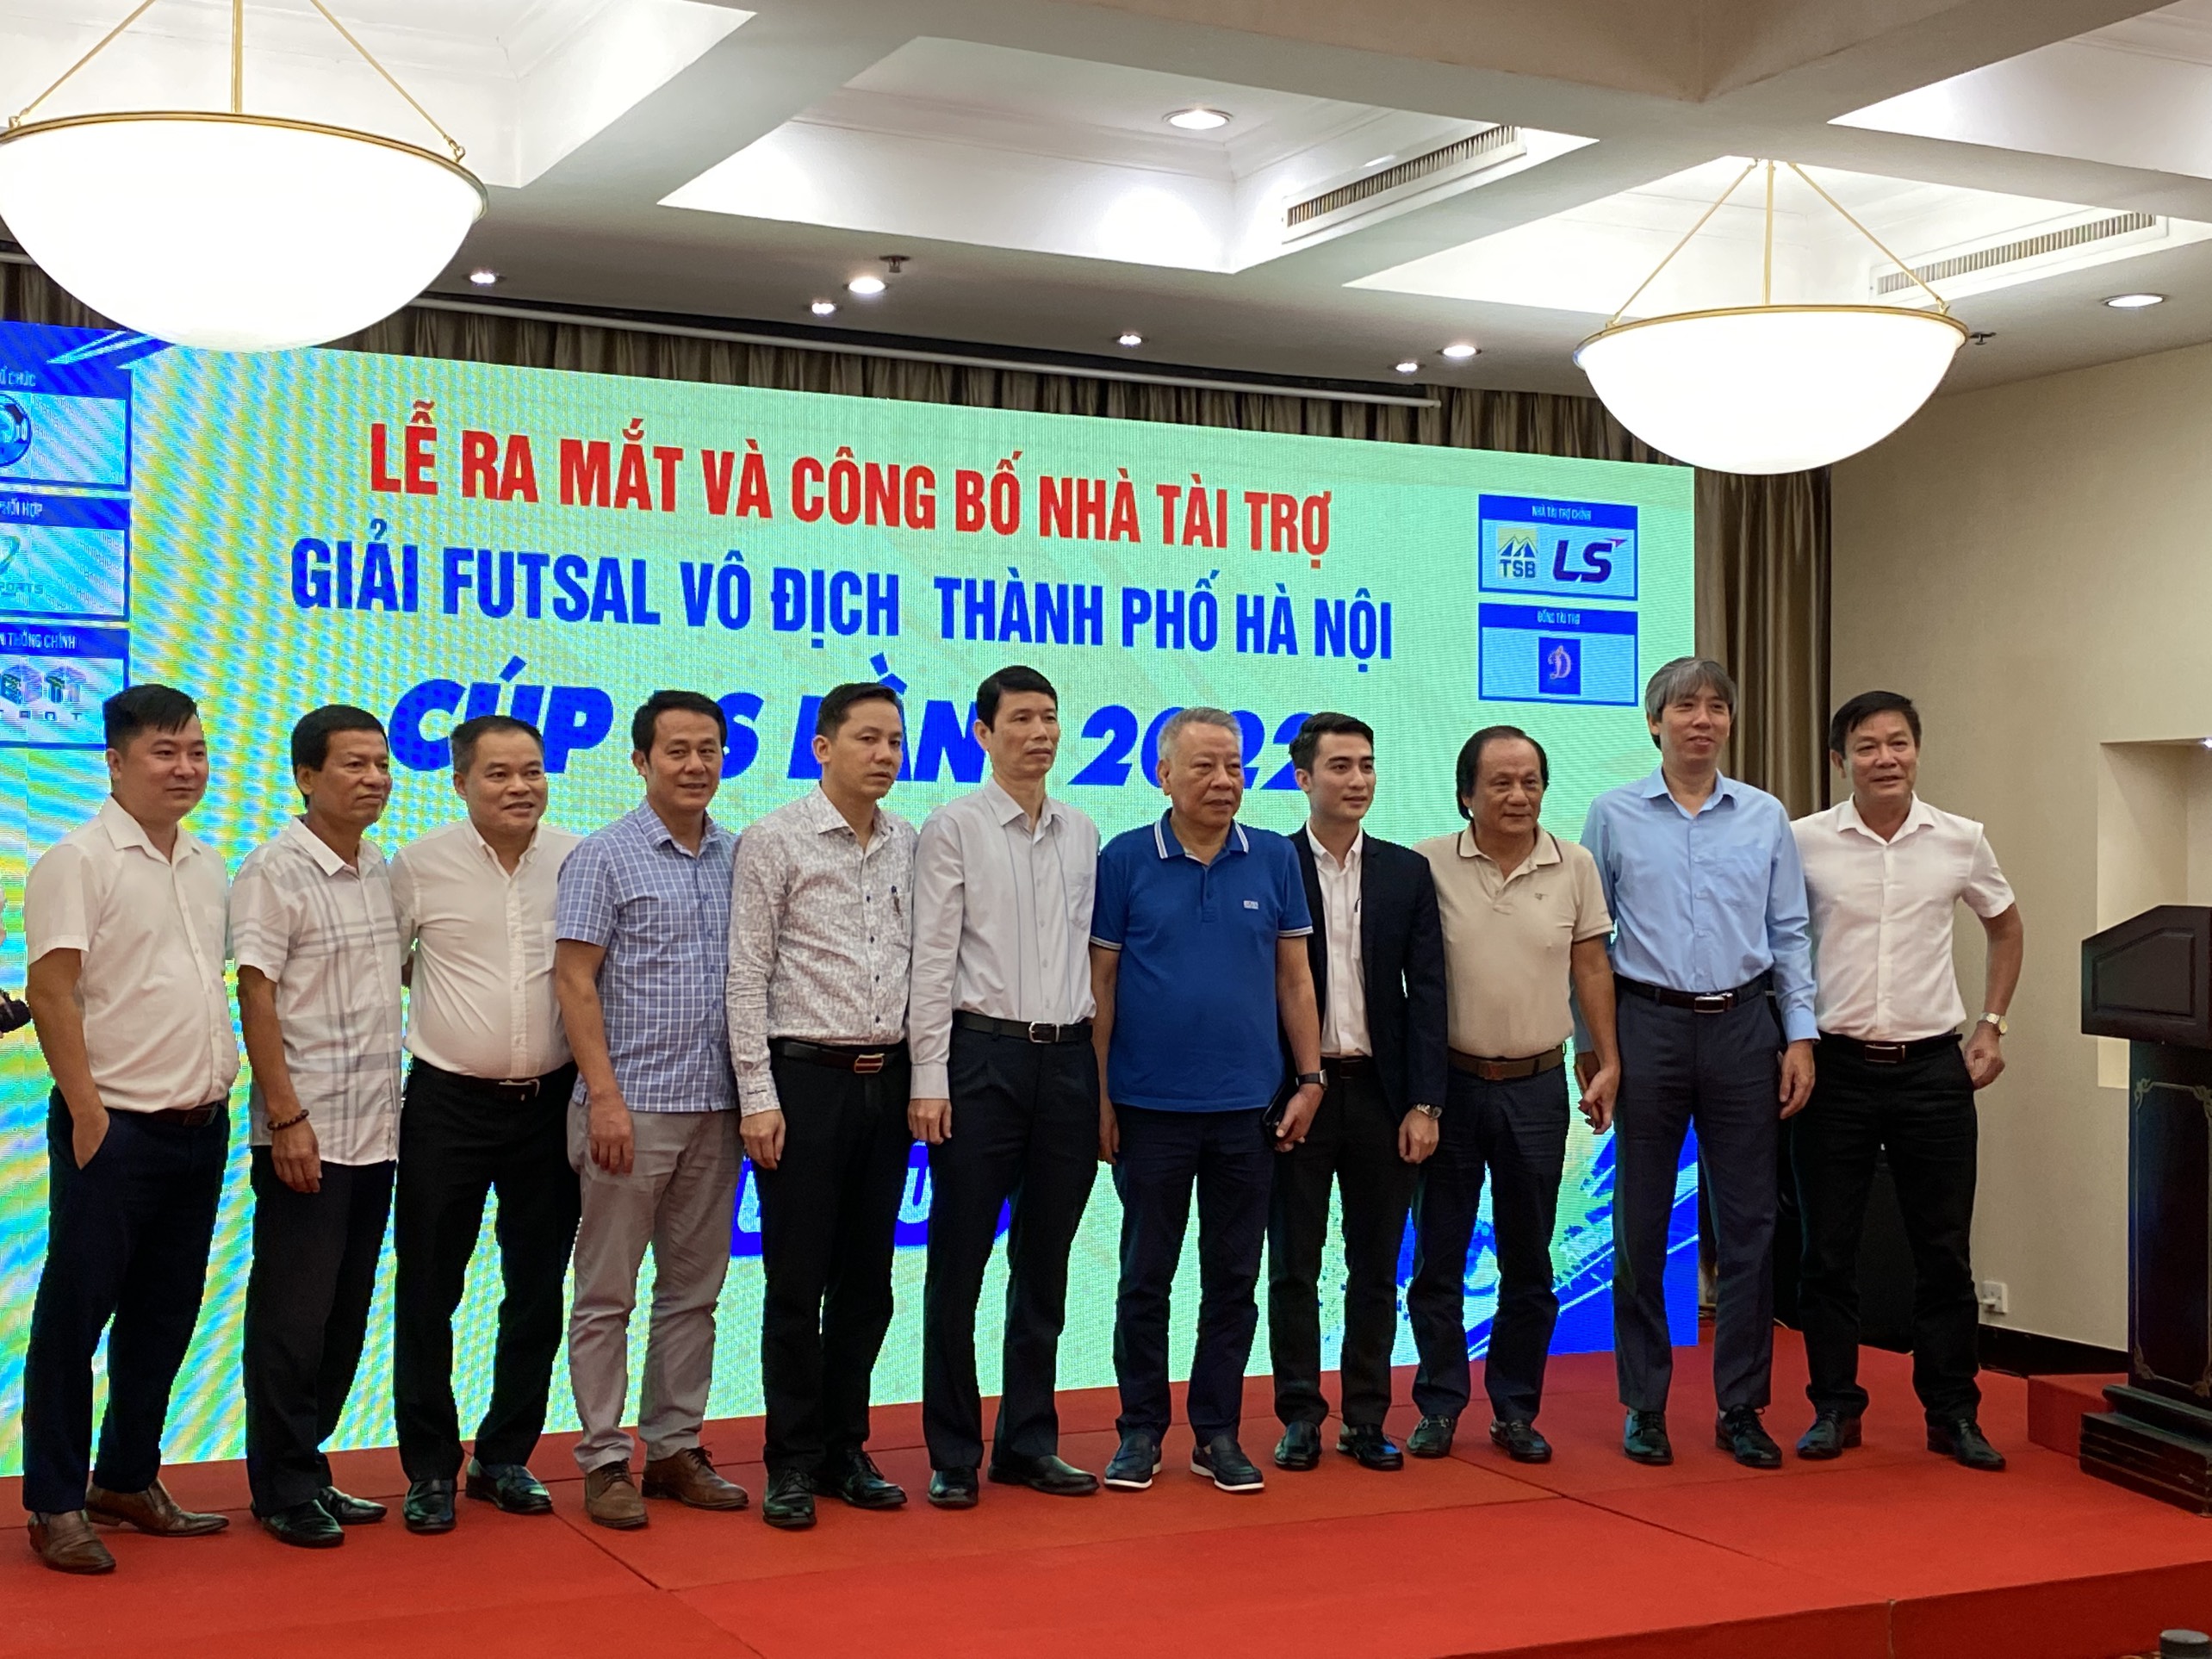 Trẻ Thái Sơn Bắc quyết vô địch giải Futsal vô địch thành phố Hà Nội 2022